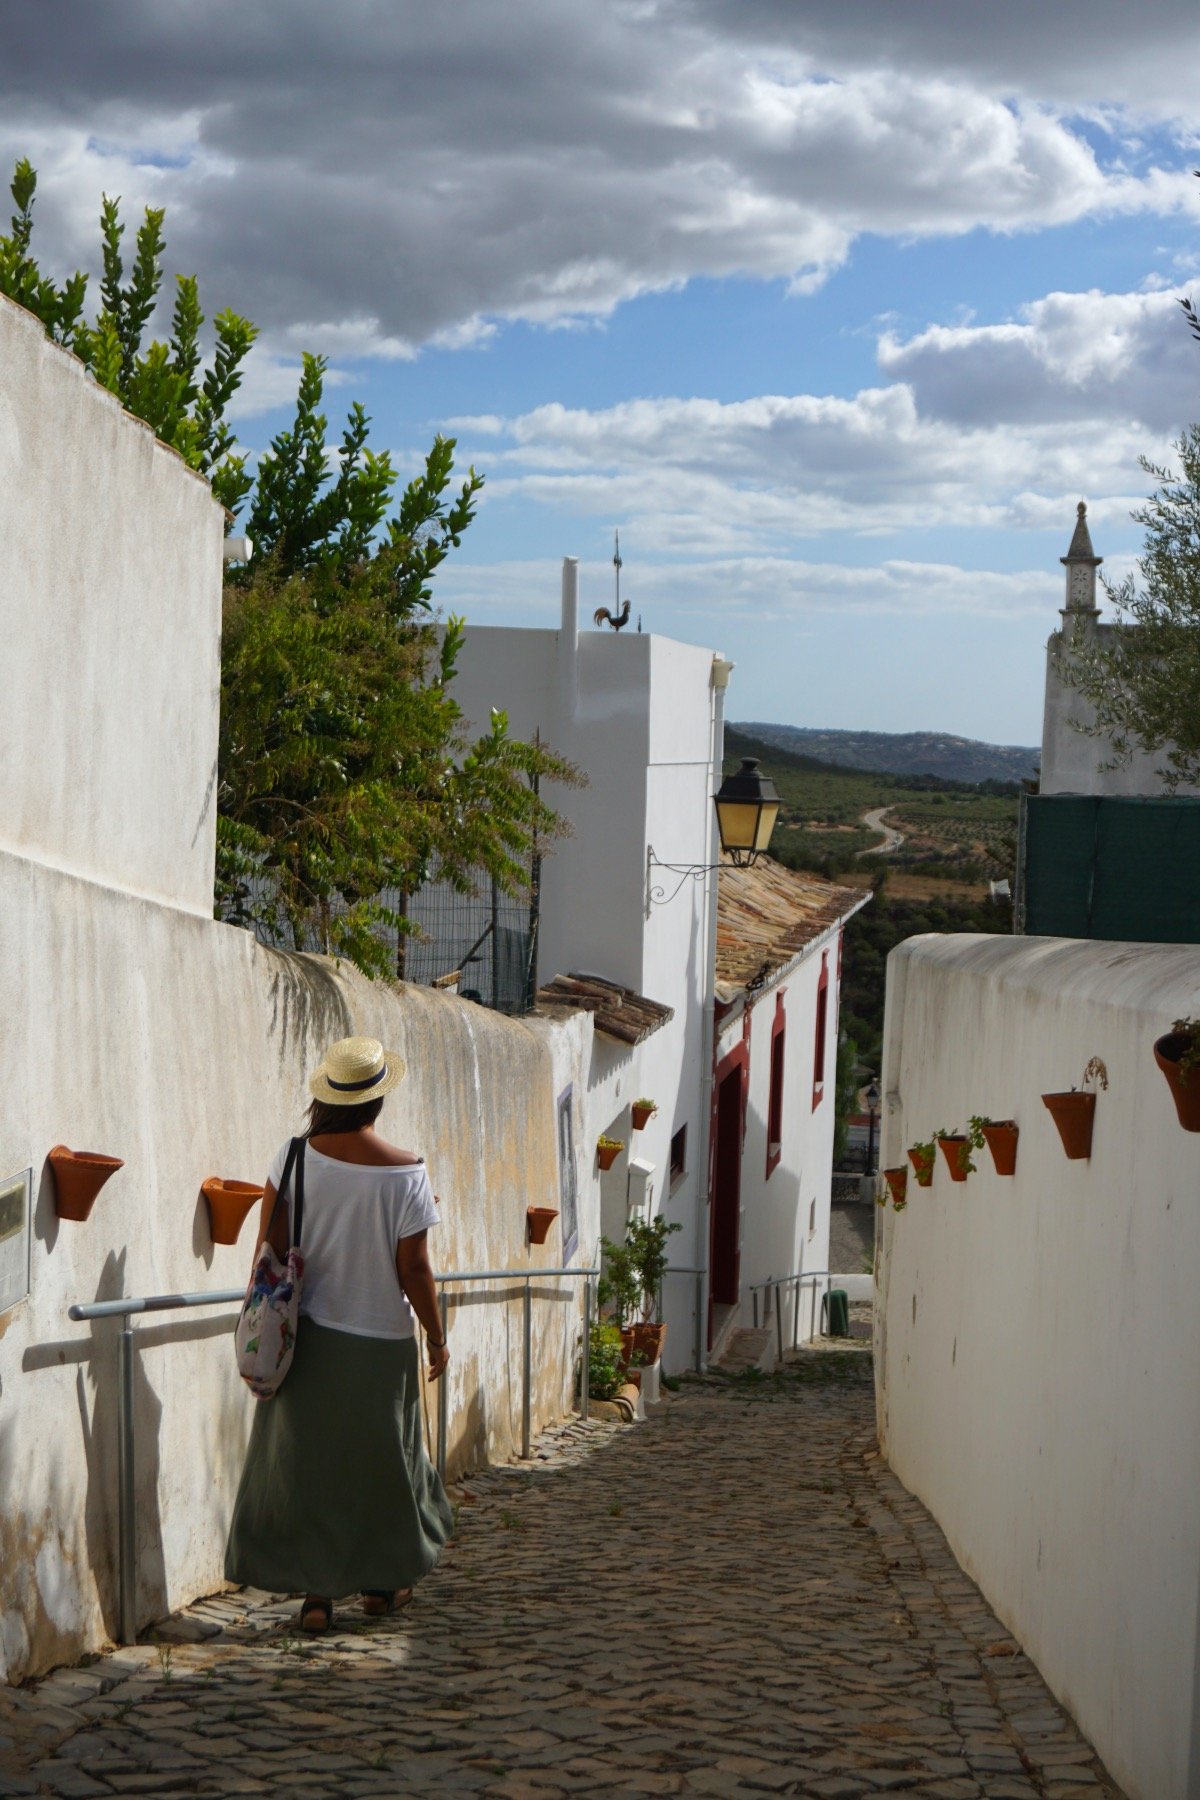 Alte, considerado el pueblo más típico de Portugal